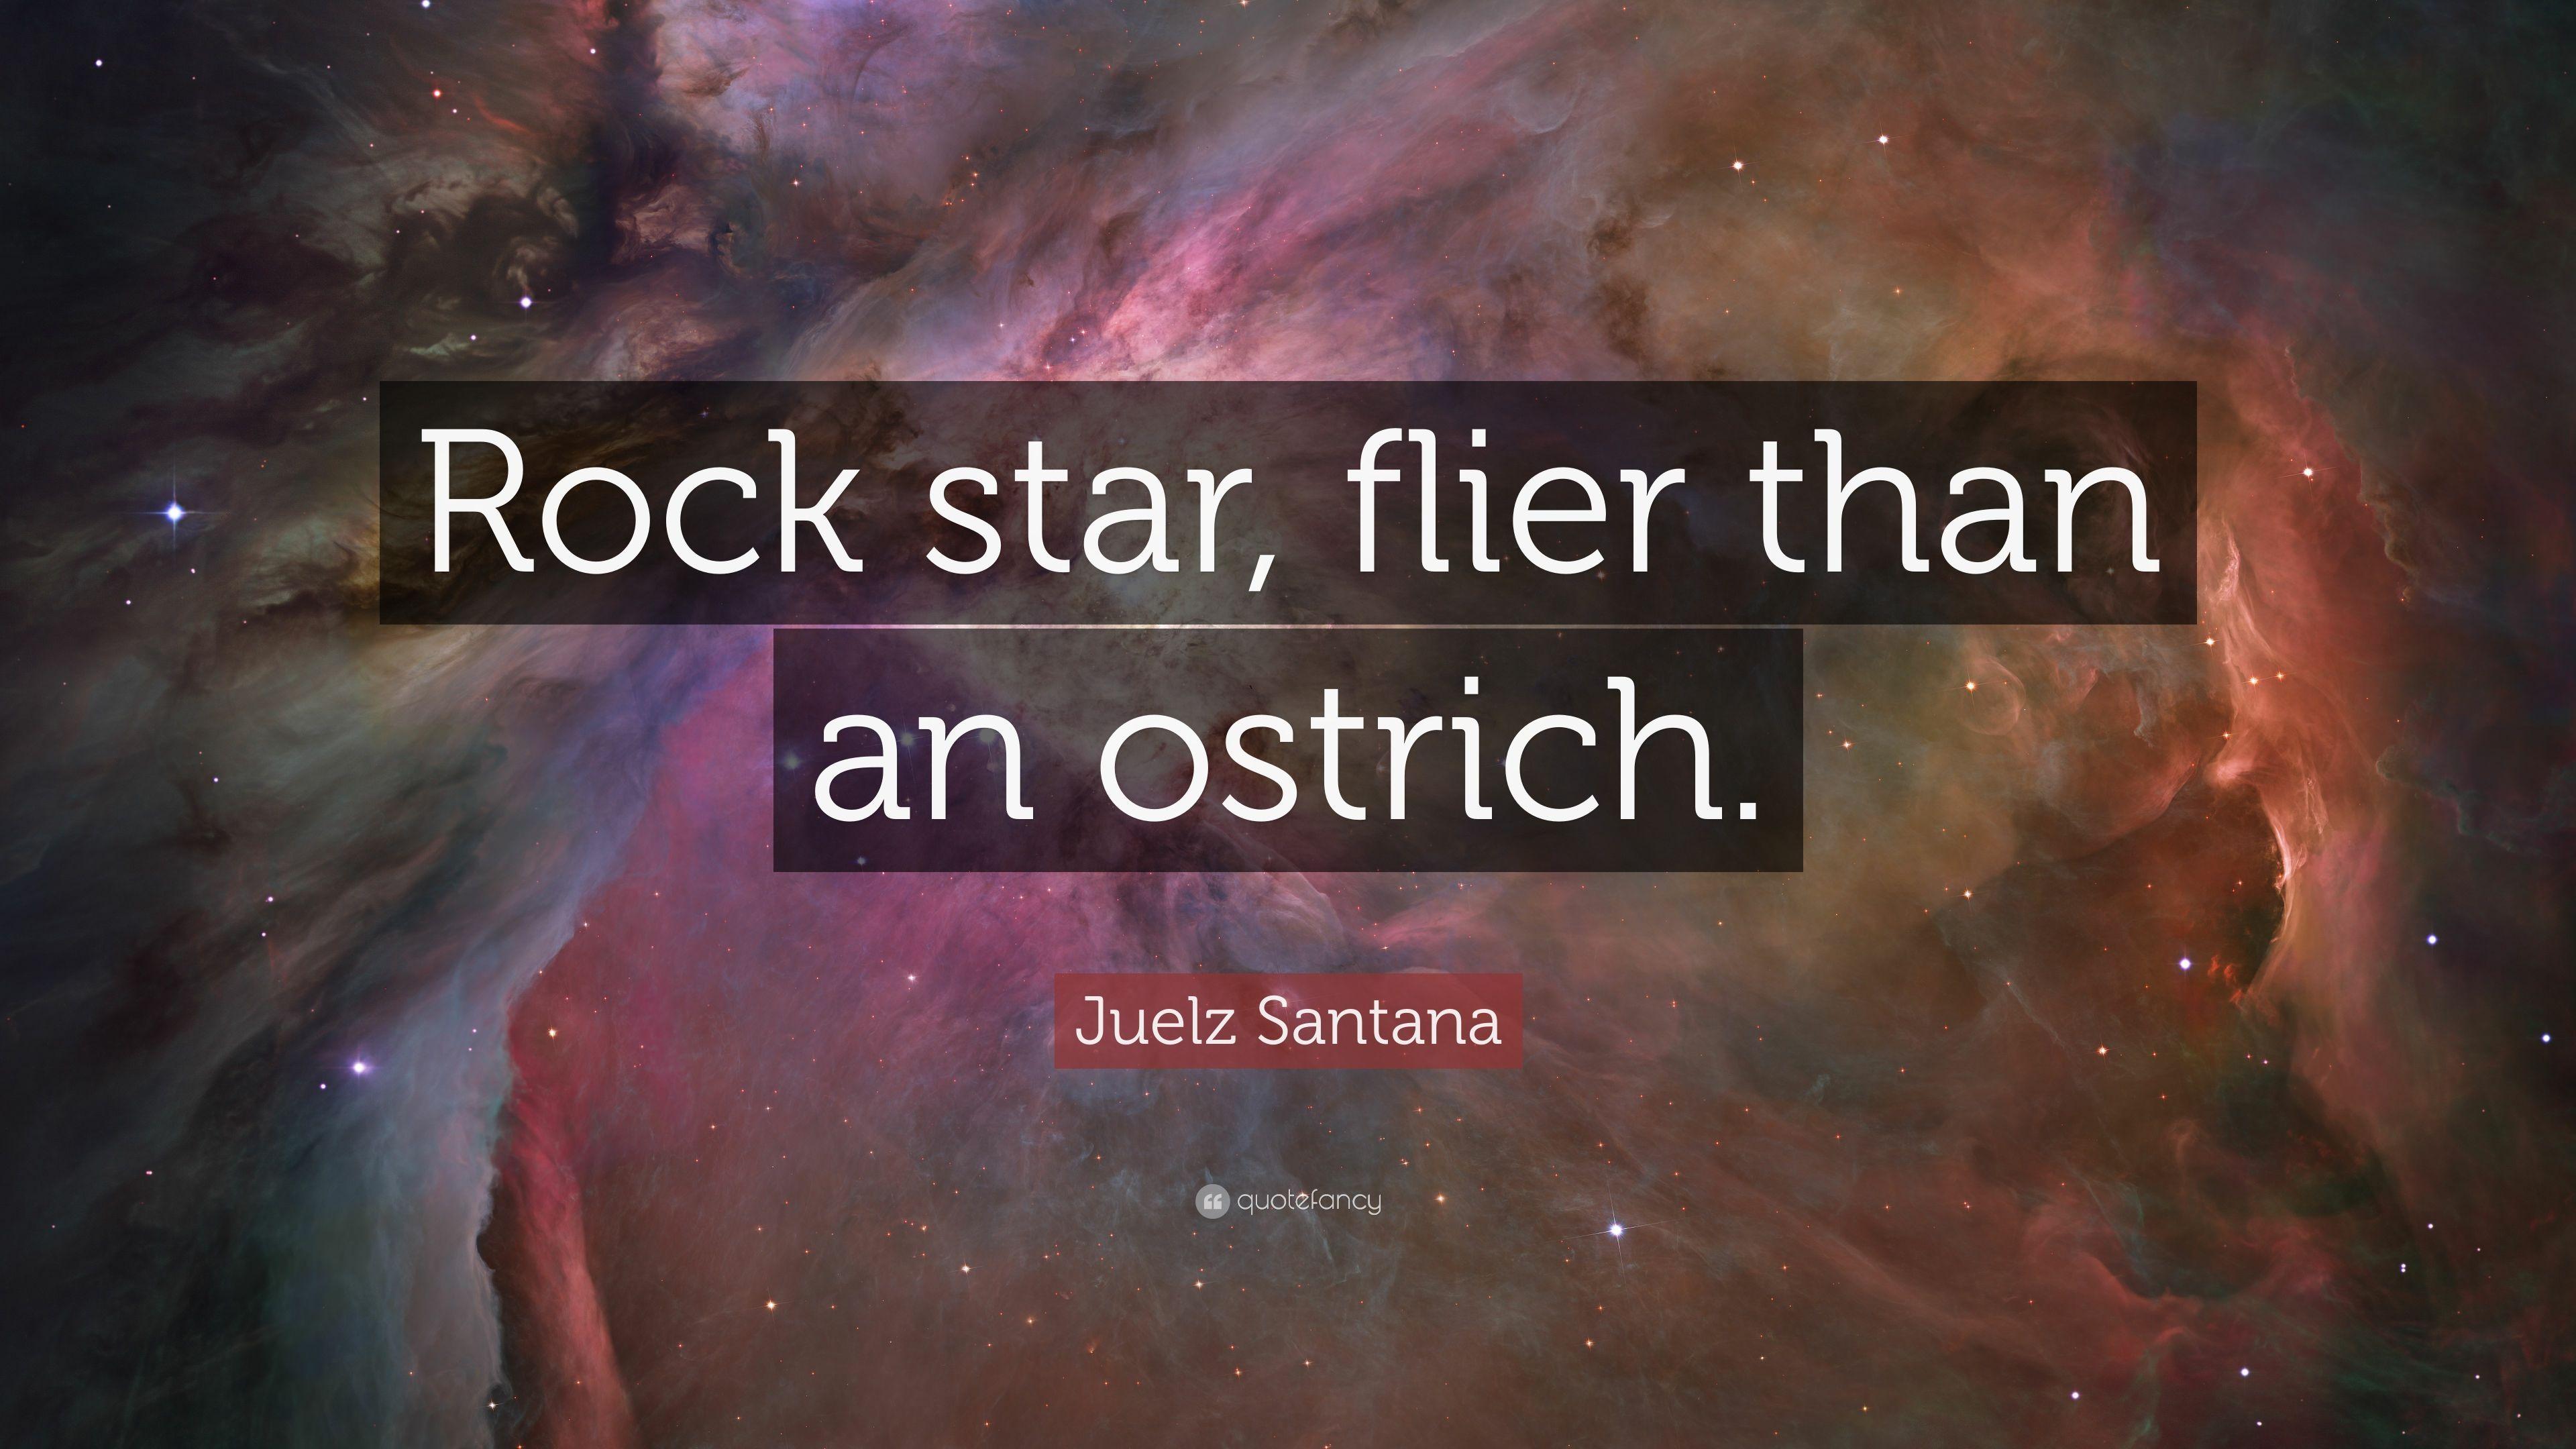 Juelz Santana Quote: “Rock star, flier than an ostrich.” 7